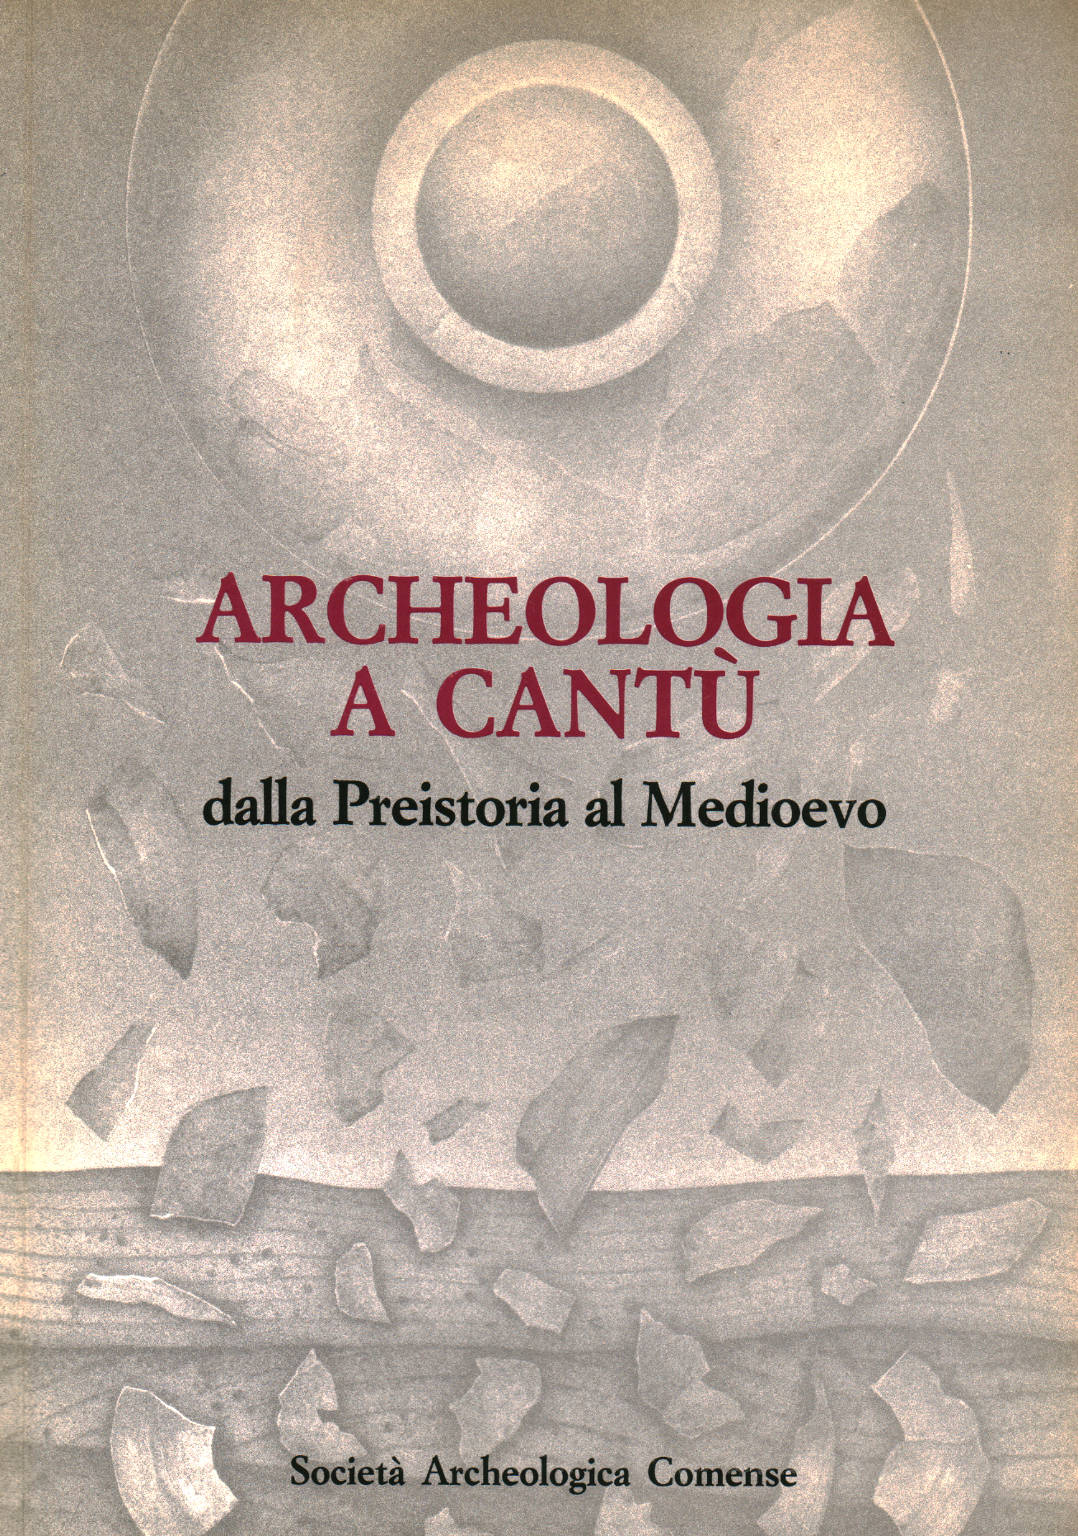 Archeology in Cantù, AA.VV.